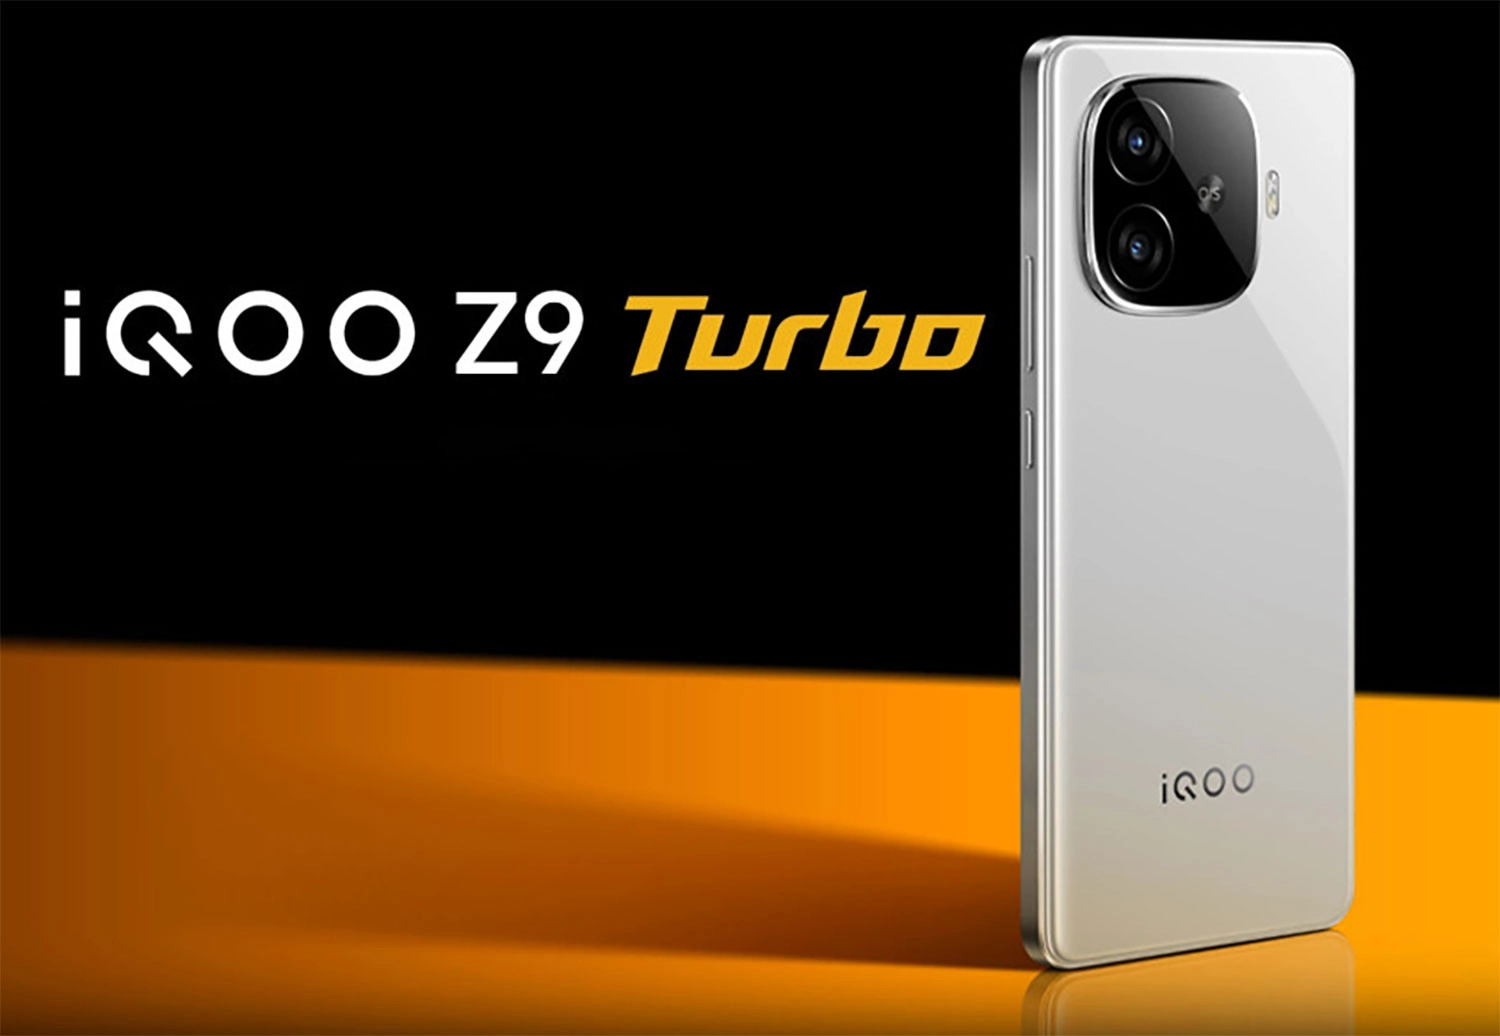 vivo-iqoo-z9-turbo-co-may-mau-trang